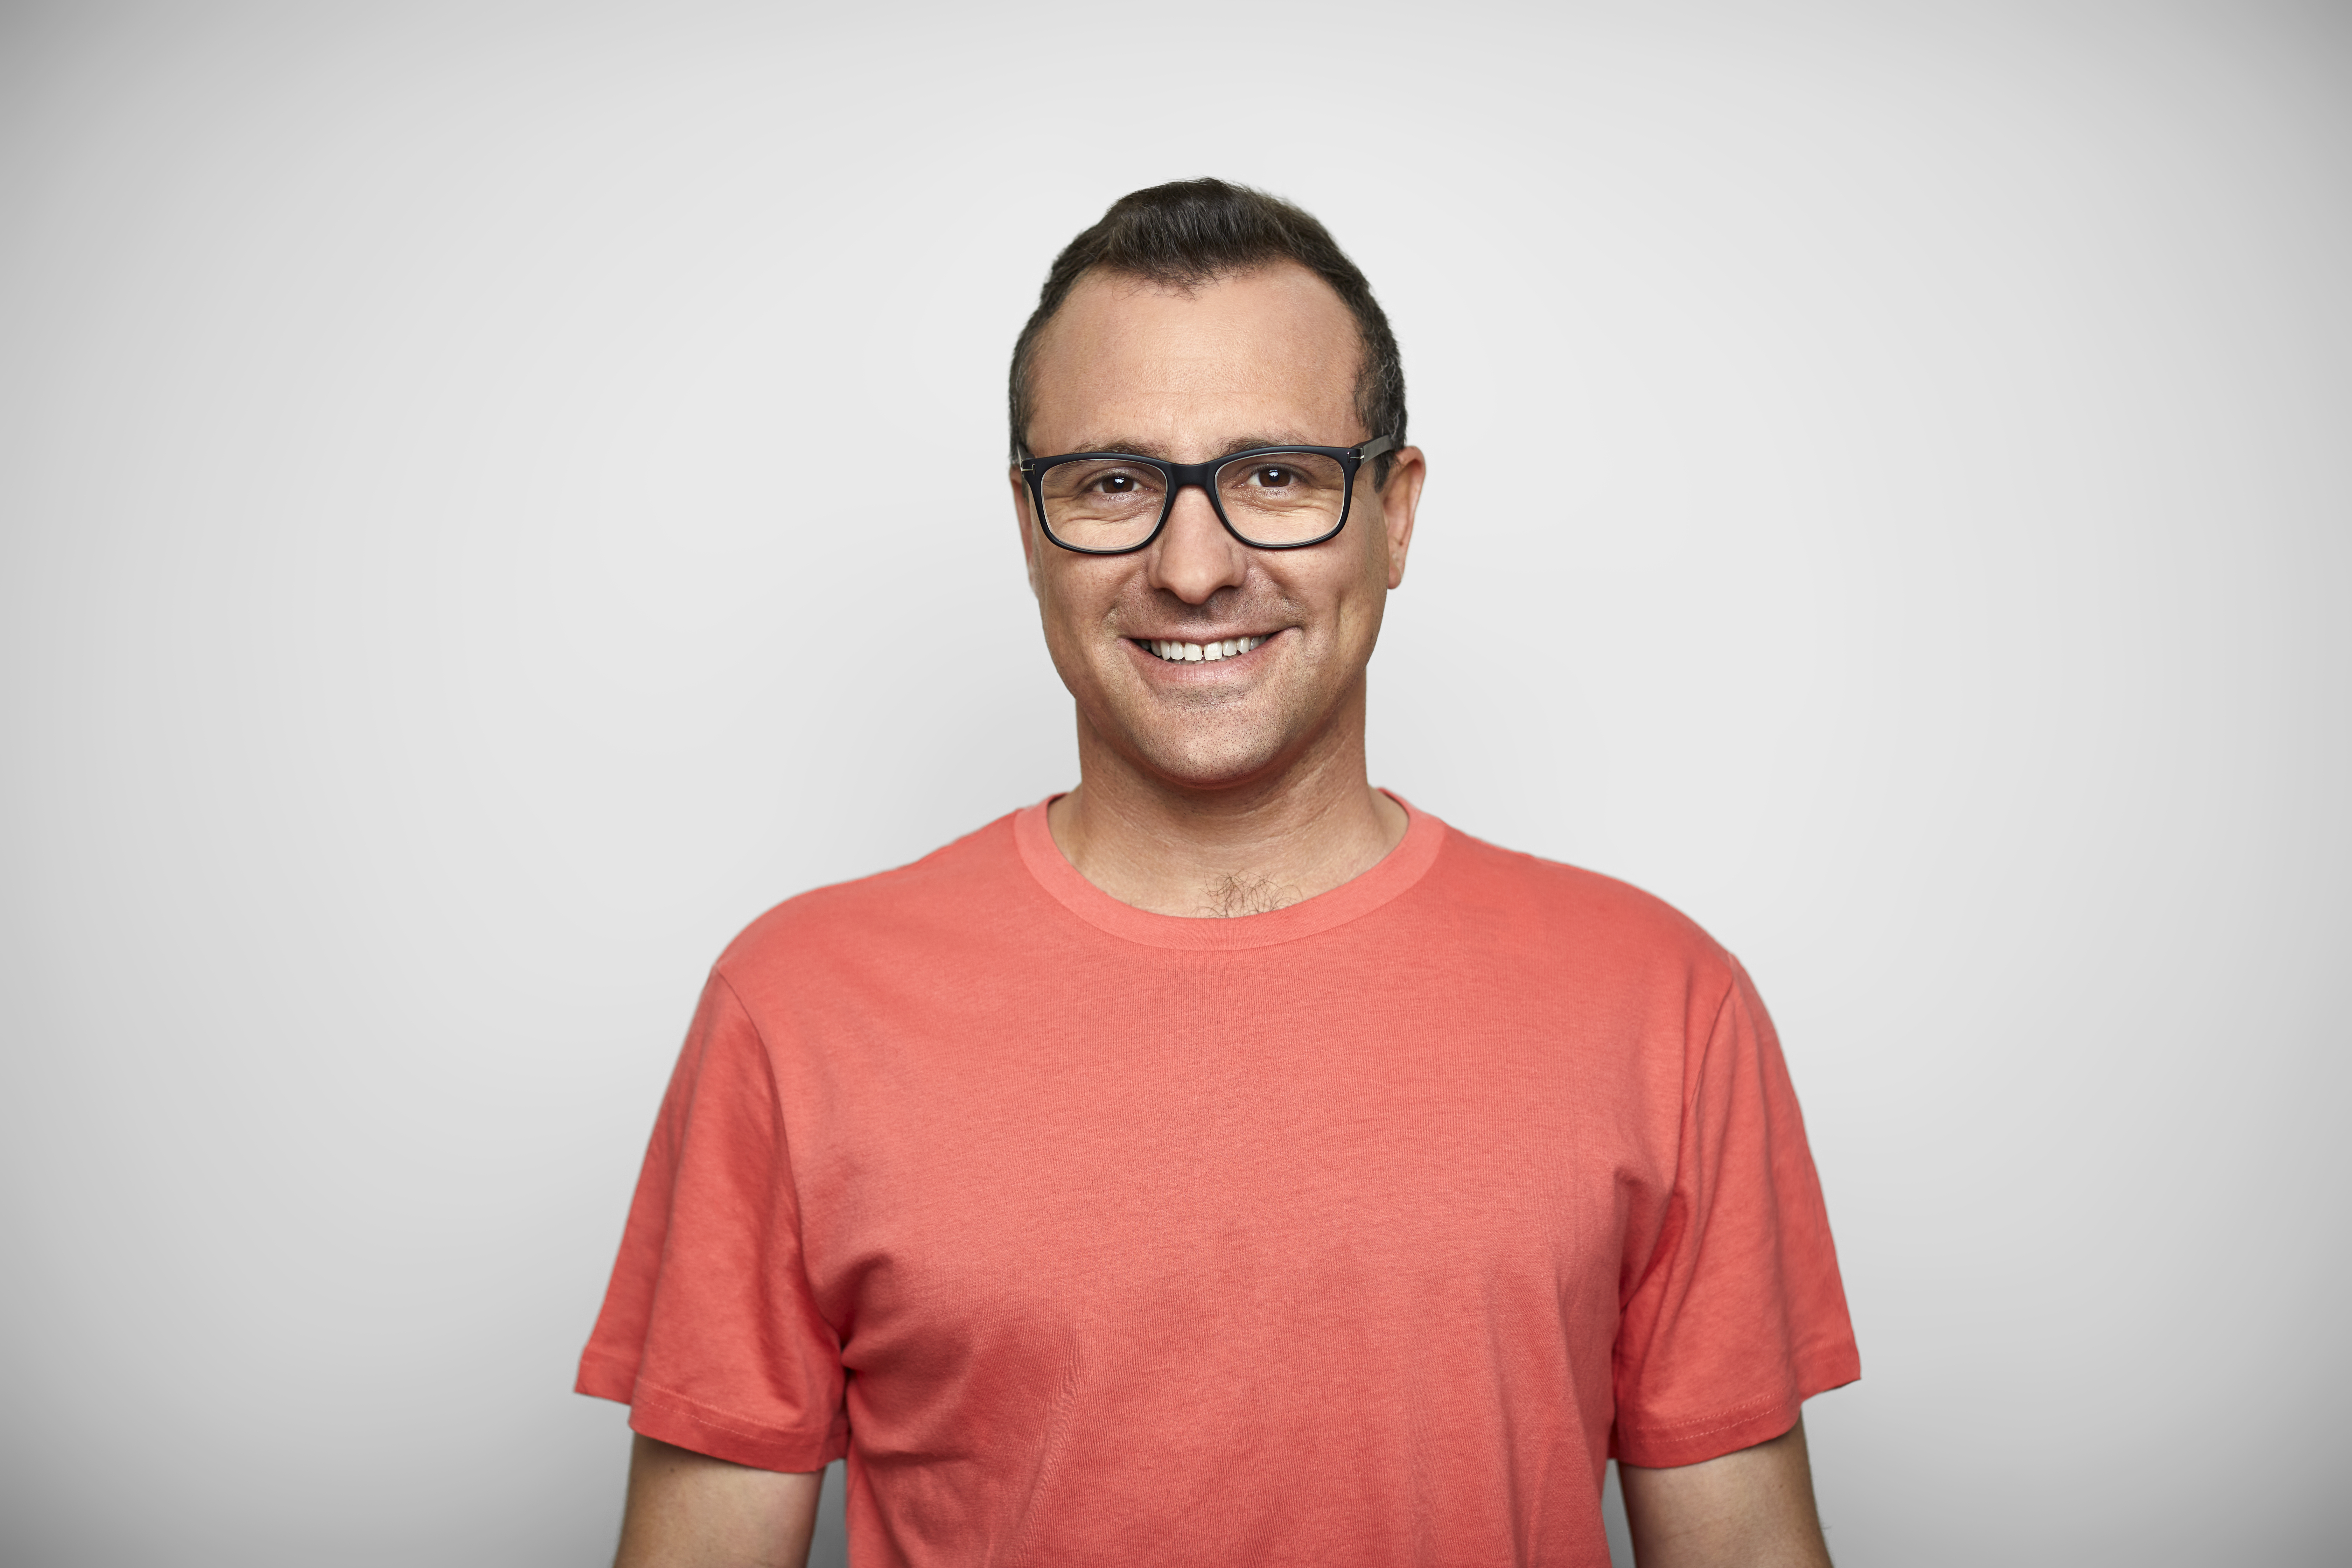 Un homme avec un t-shirt et des lunettes | Source : Getty Images